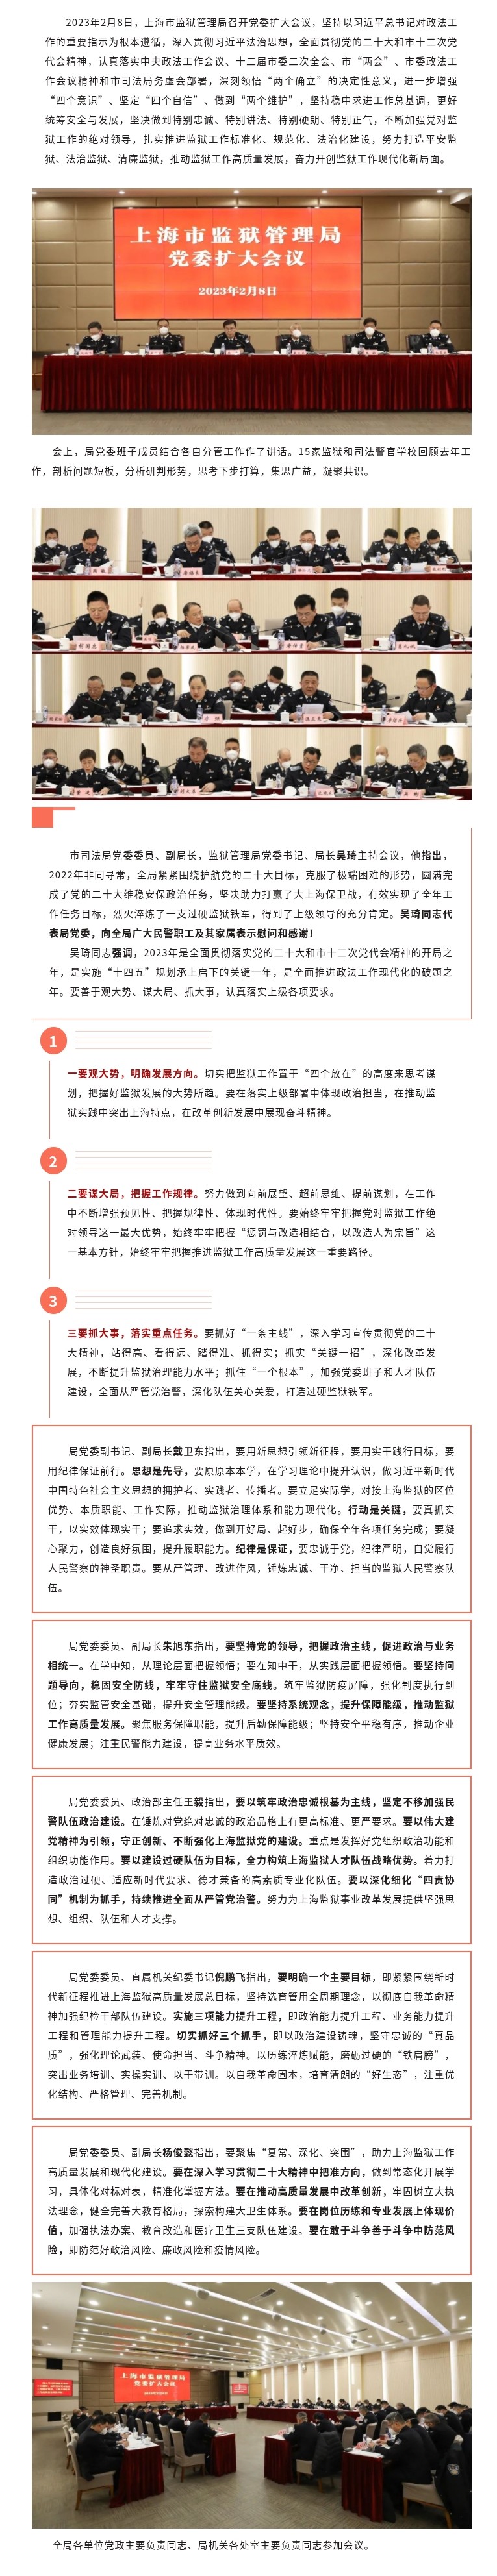 上海监狱谋2023年监狱工作规划计划.jpg